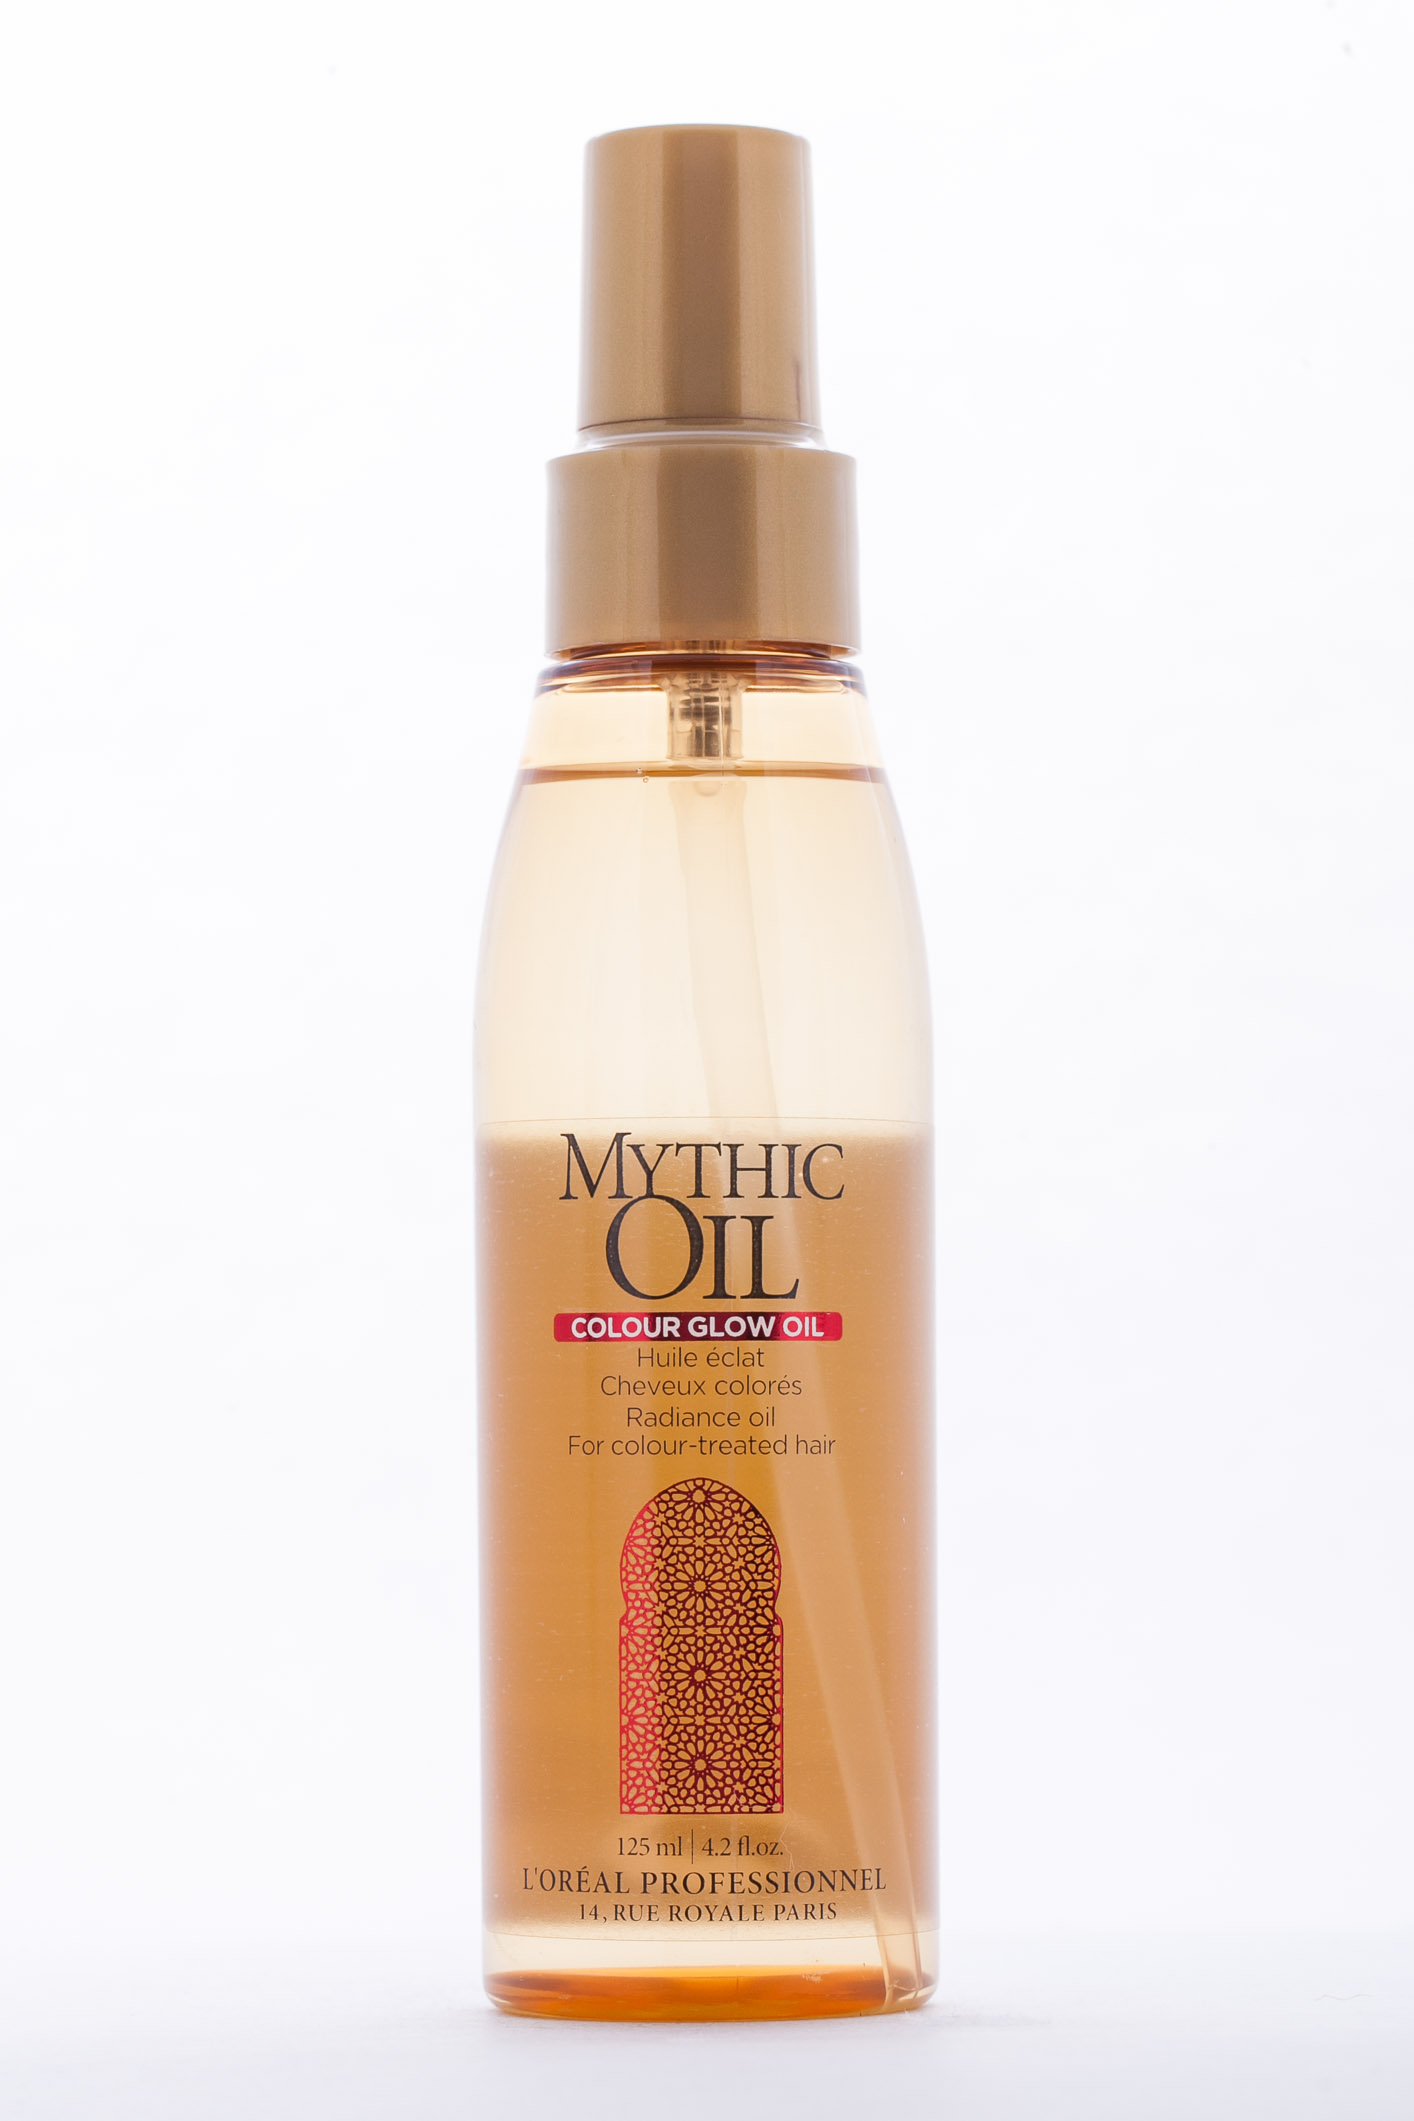 Как пользоваться маслом для волос лореаль mythic oil